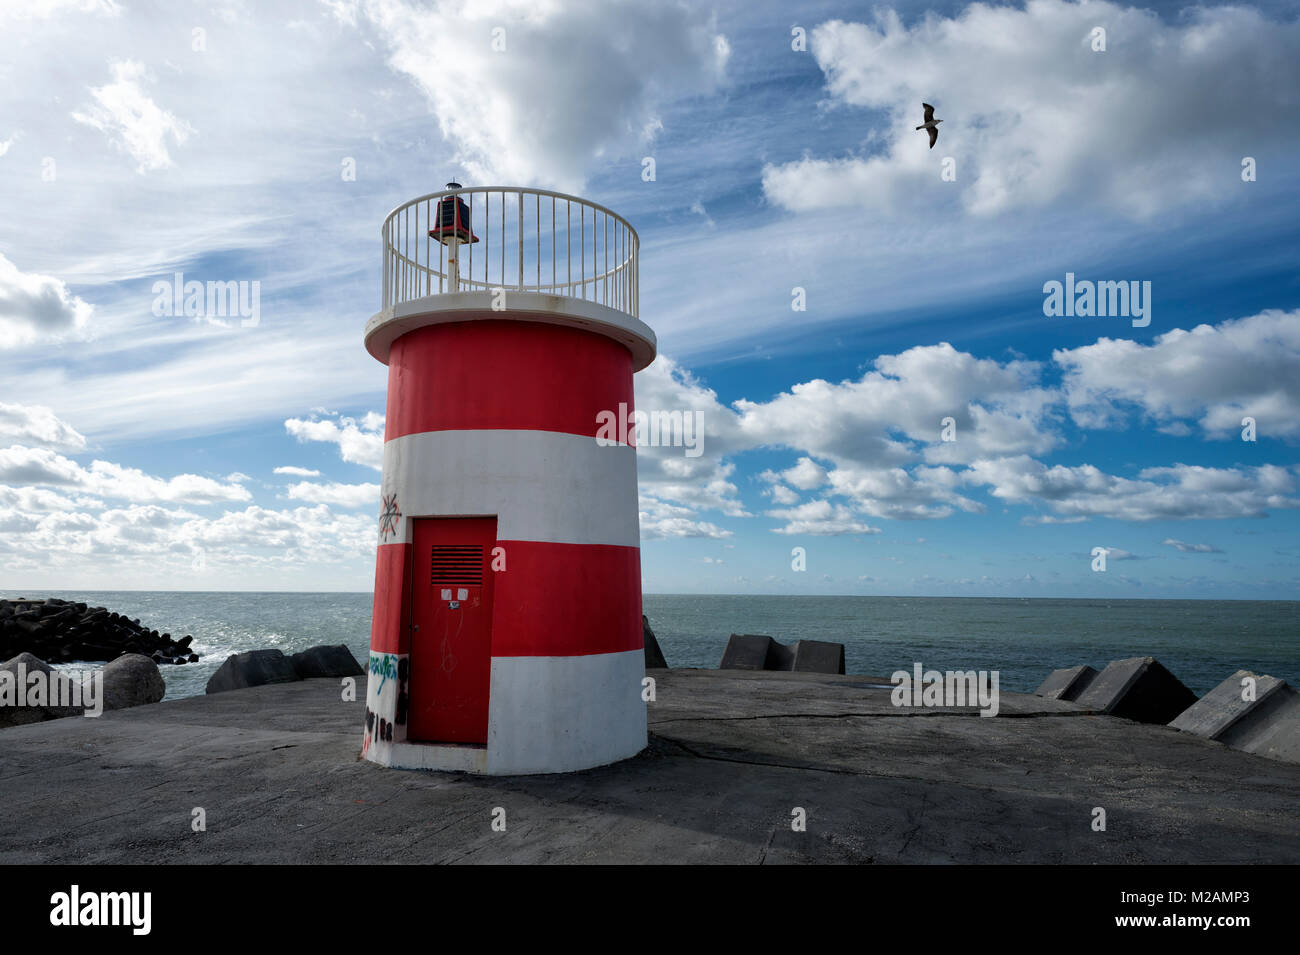 Red & White striped lighthouse / navigazione mark all'ingresso di un porto Foto Stock